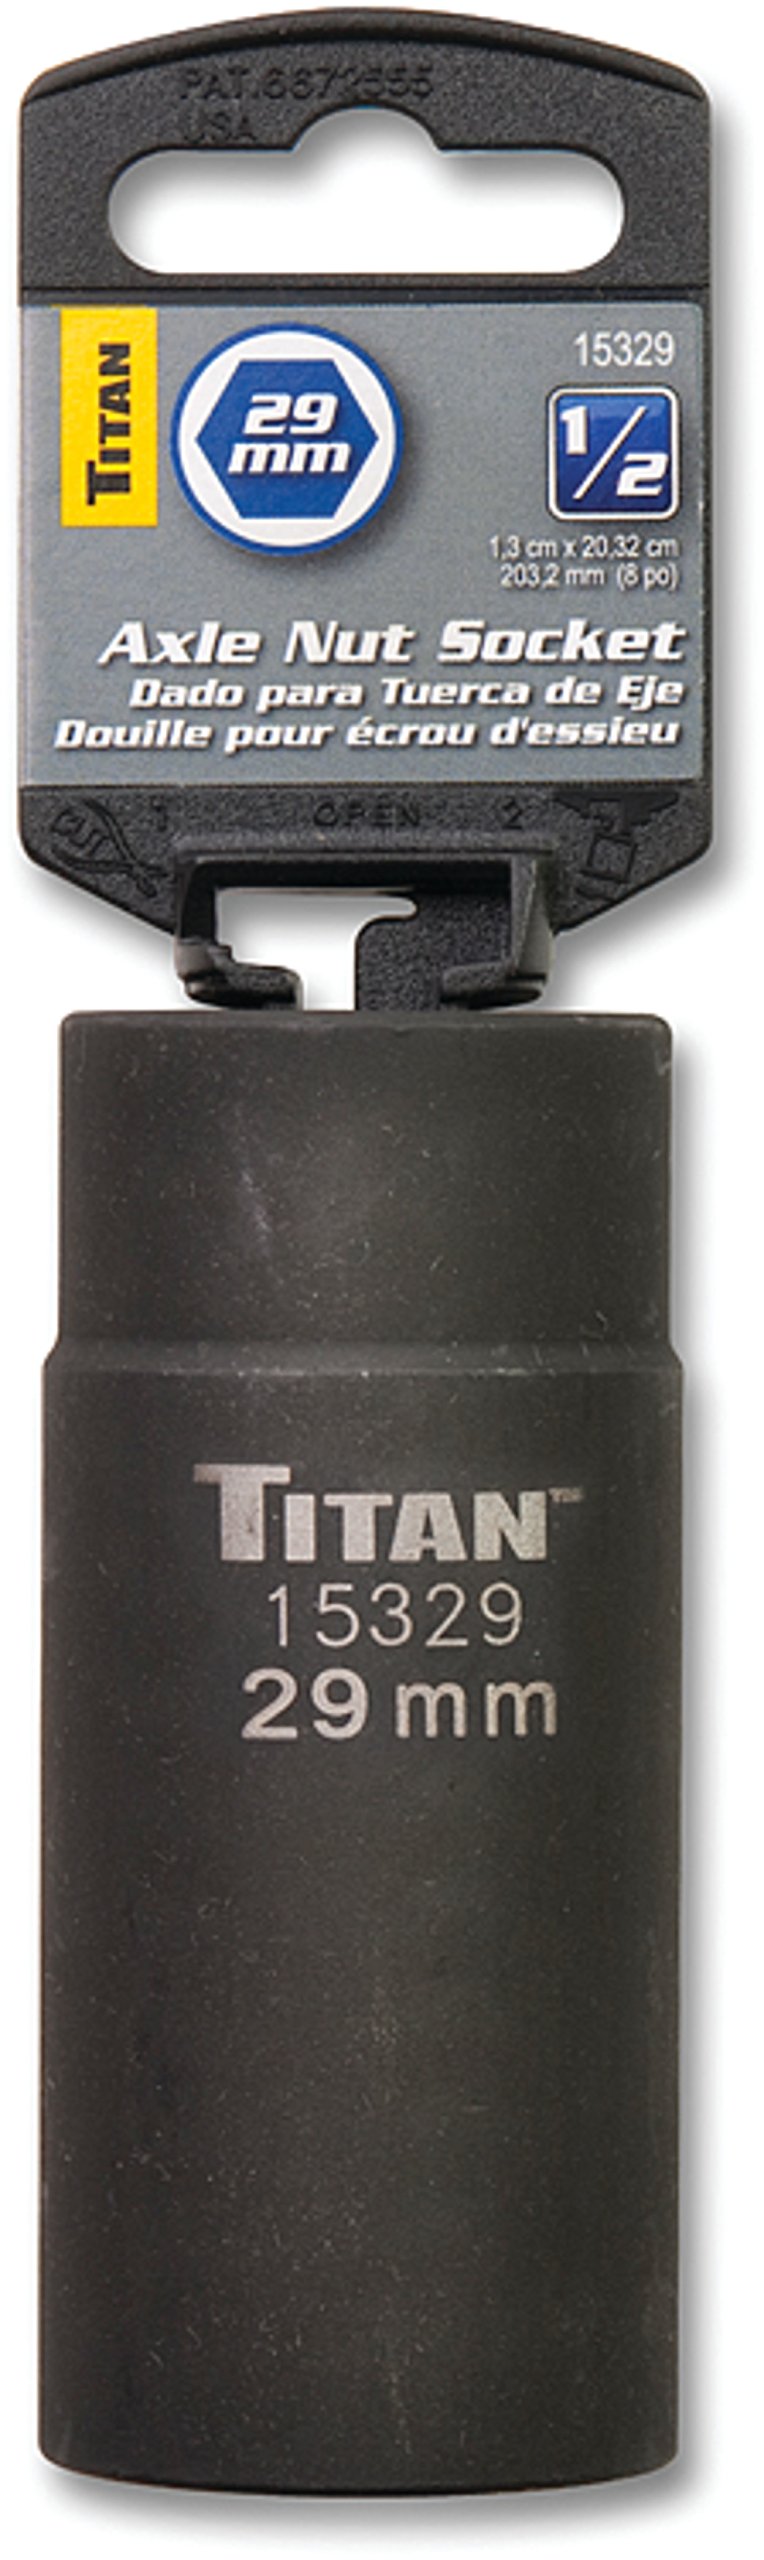  [AUSTRALIA] - Titan 15329 29mm 1/2 Drive 6 Point Axle Nut Socket